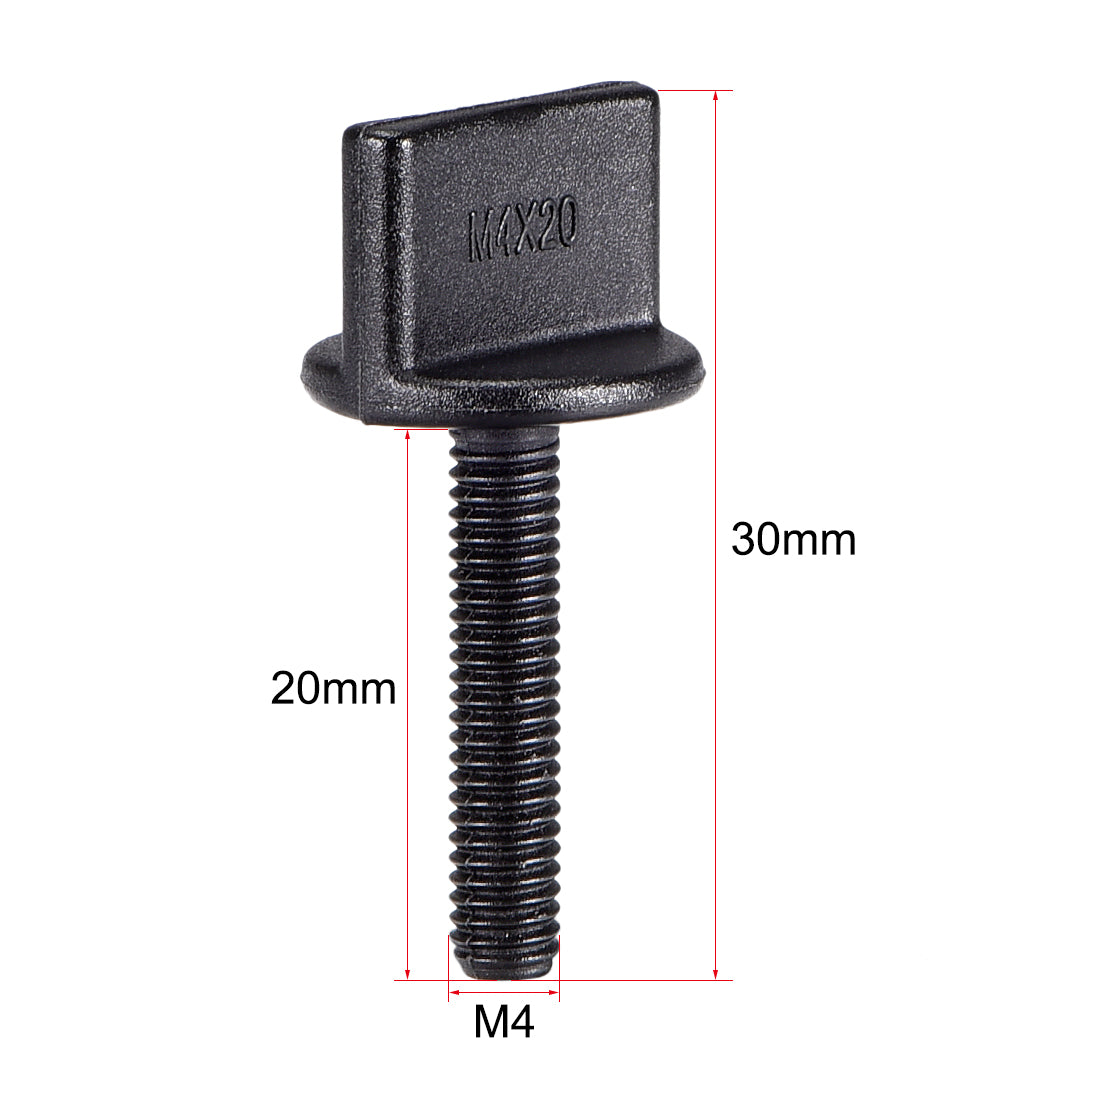 uxcell Uxcell M4 x 20mm Thumb Screw Bolt Nylon Plastic Screws Metric Thread 10 Pcs